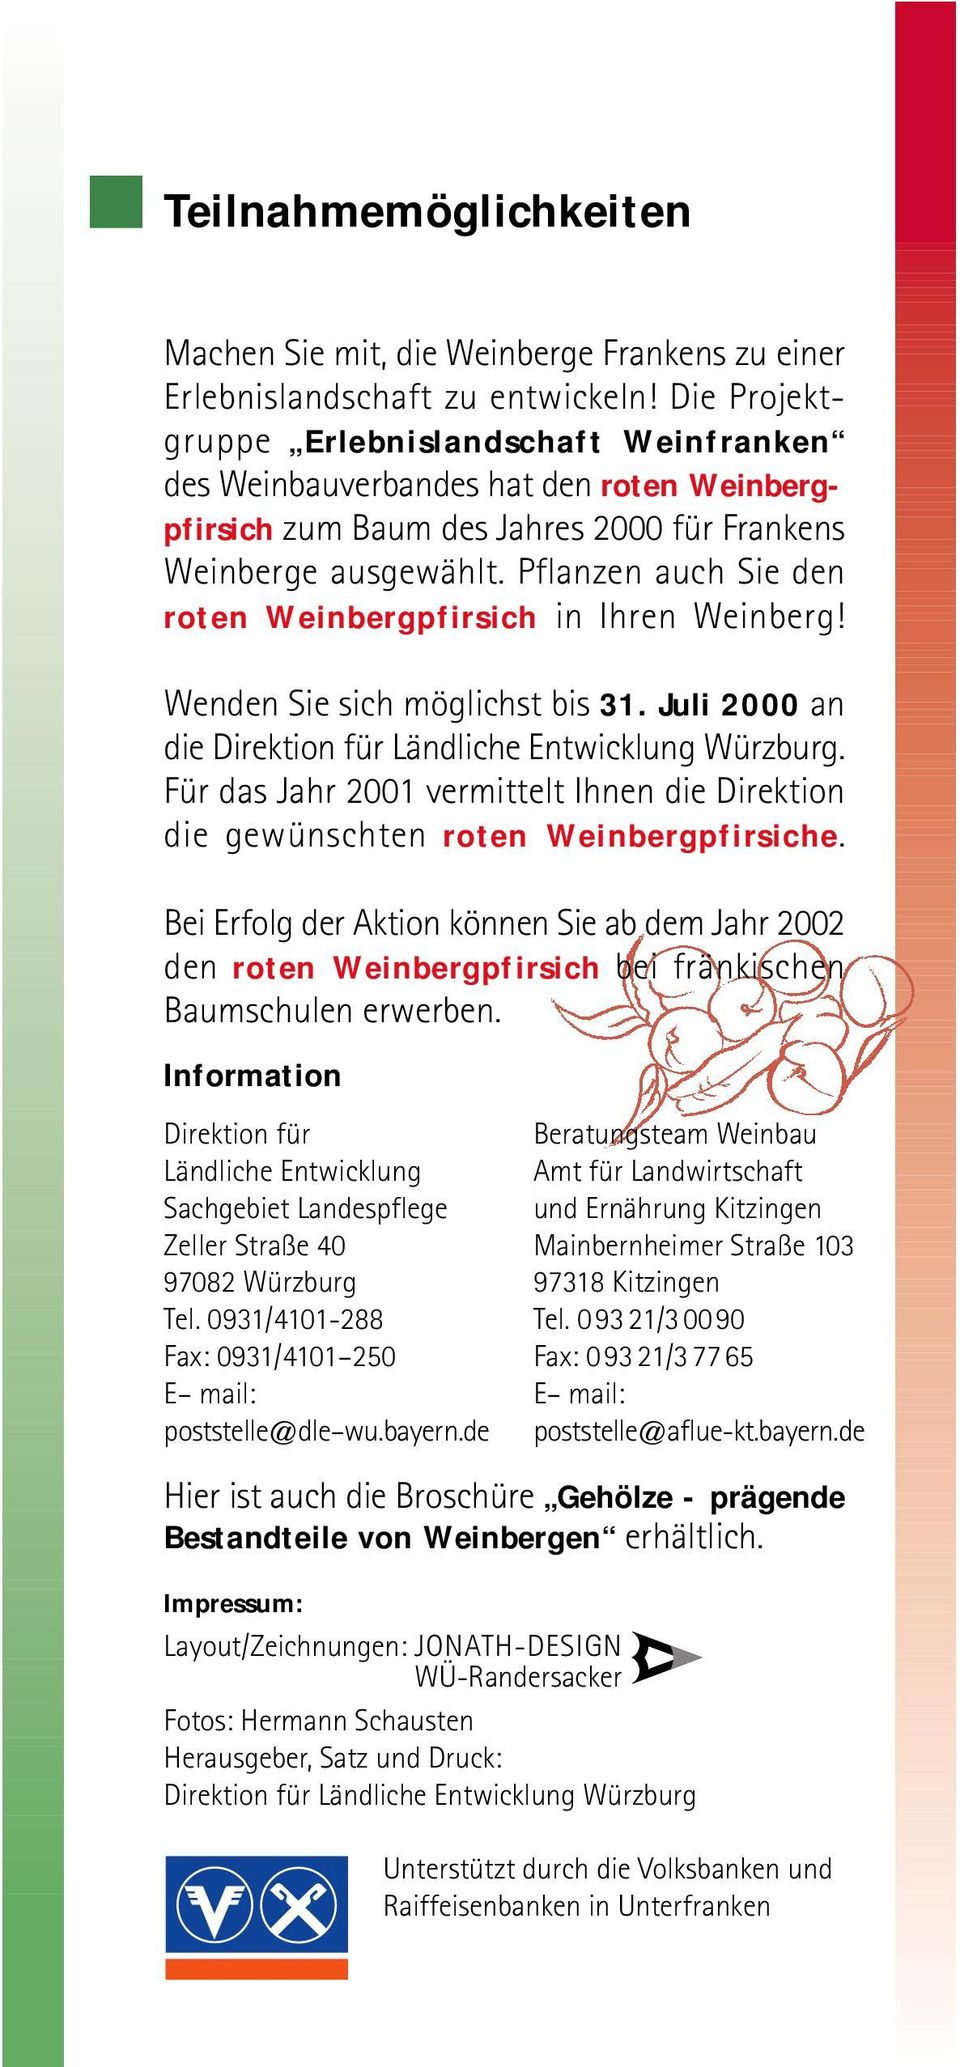 Pflanzen auch Sie den roten Weinbergpfirsich in Ihren Weinberg! Wenden Sie sich möglichst bis 31. Juli 2000 an die Direktion für Ländliche Entwicklung Würzburg.